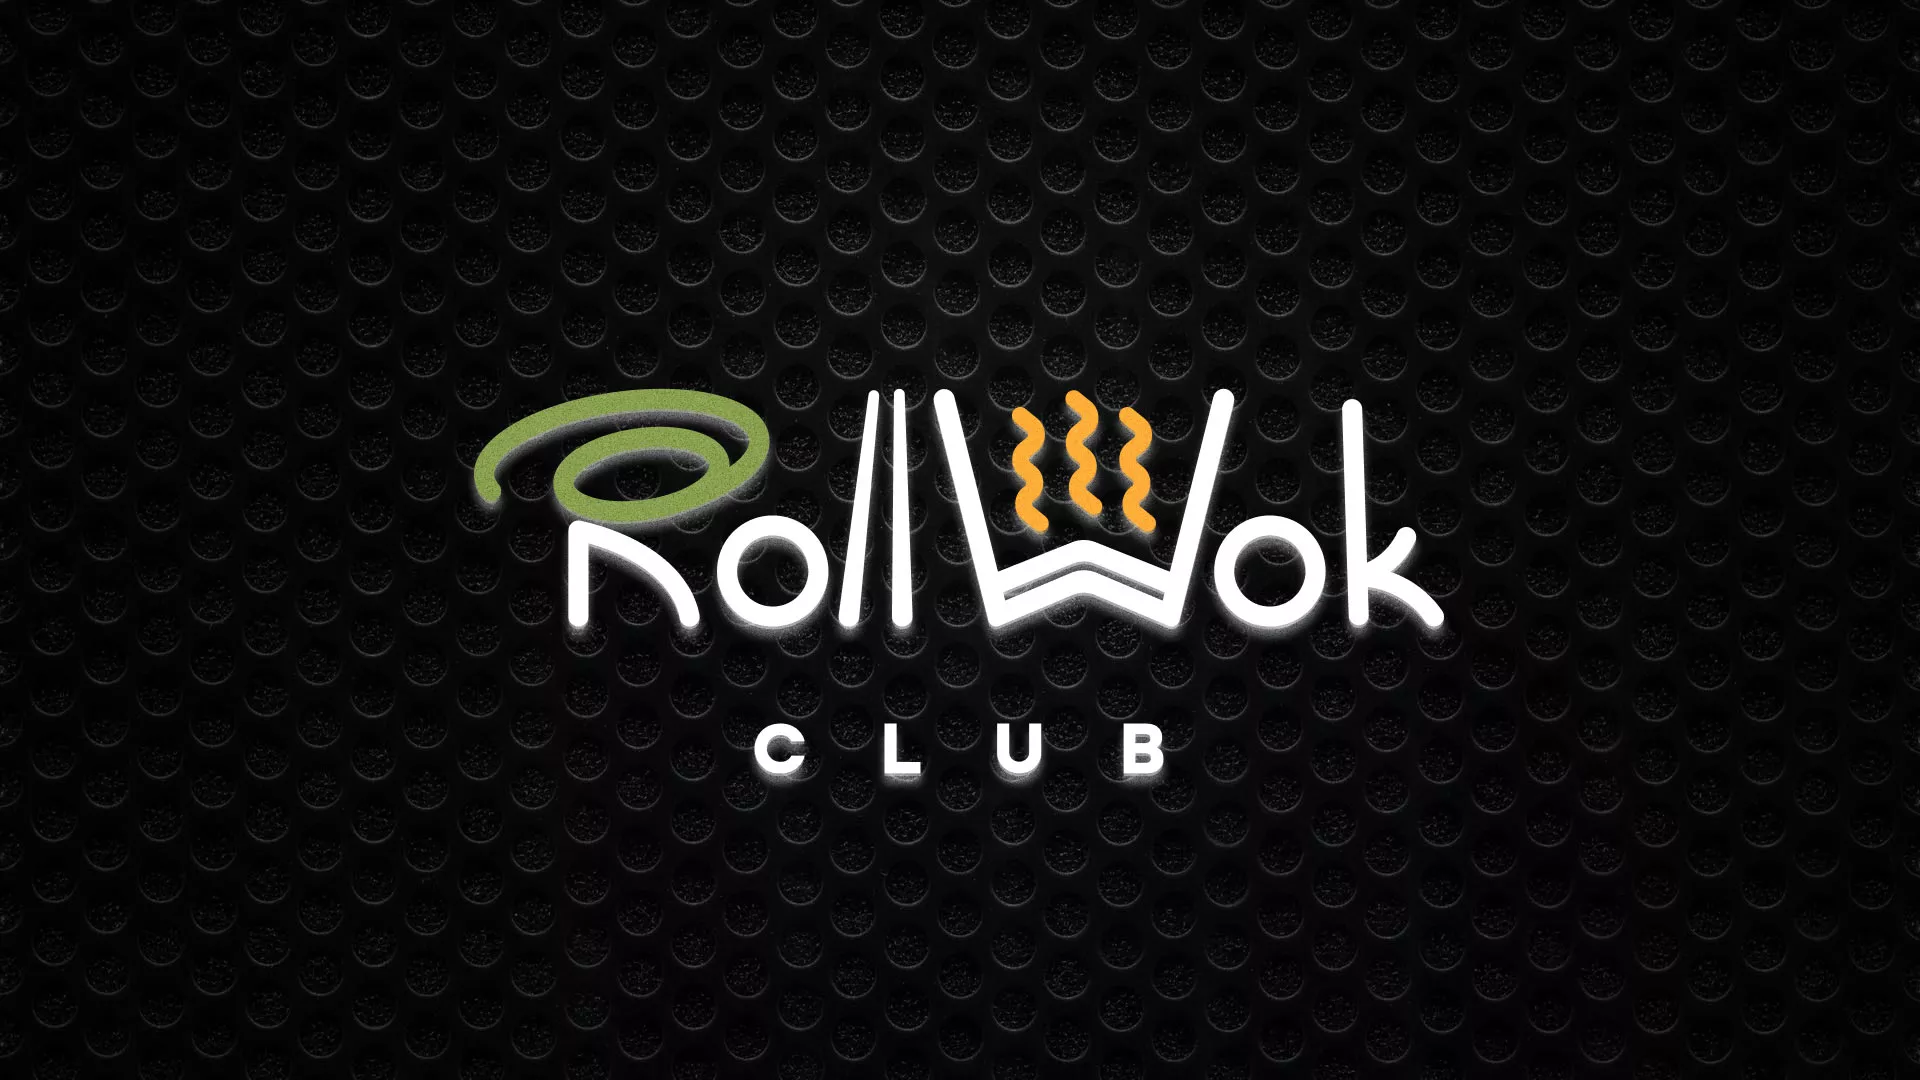 Брендирование торговых точек суши-бара «Roll Wok Club» в Грозном